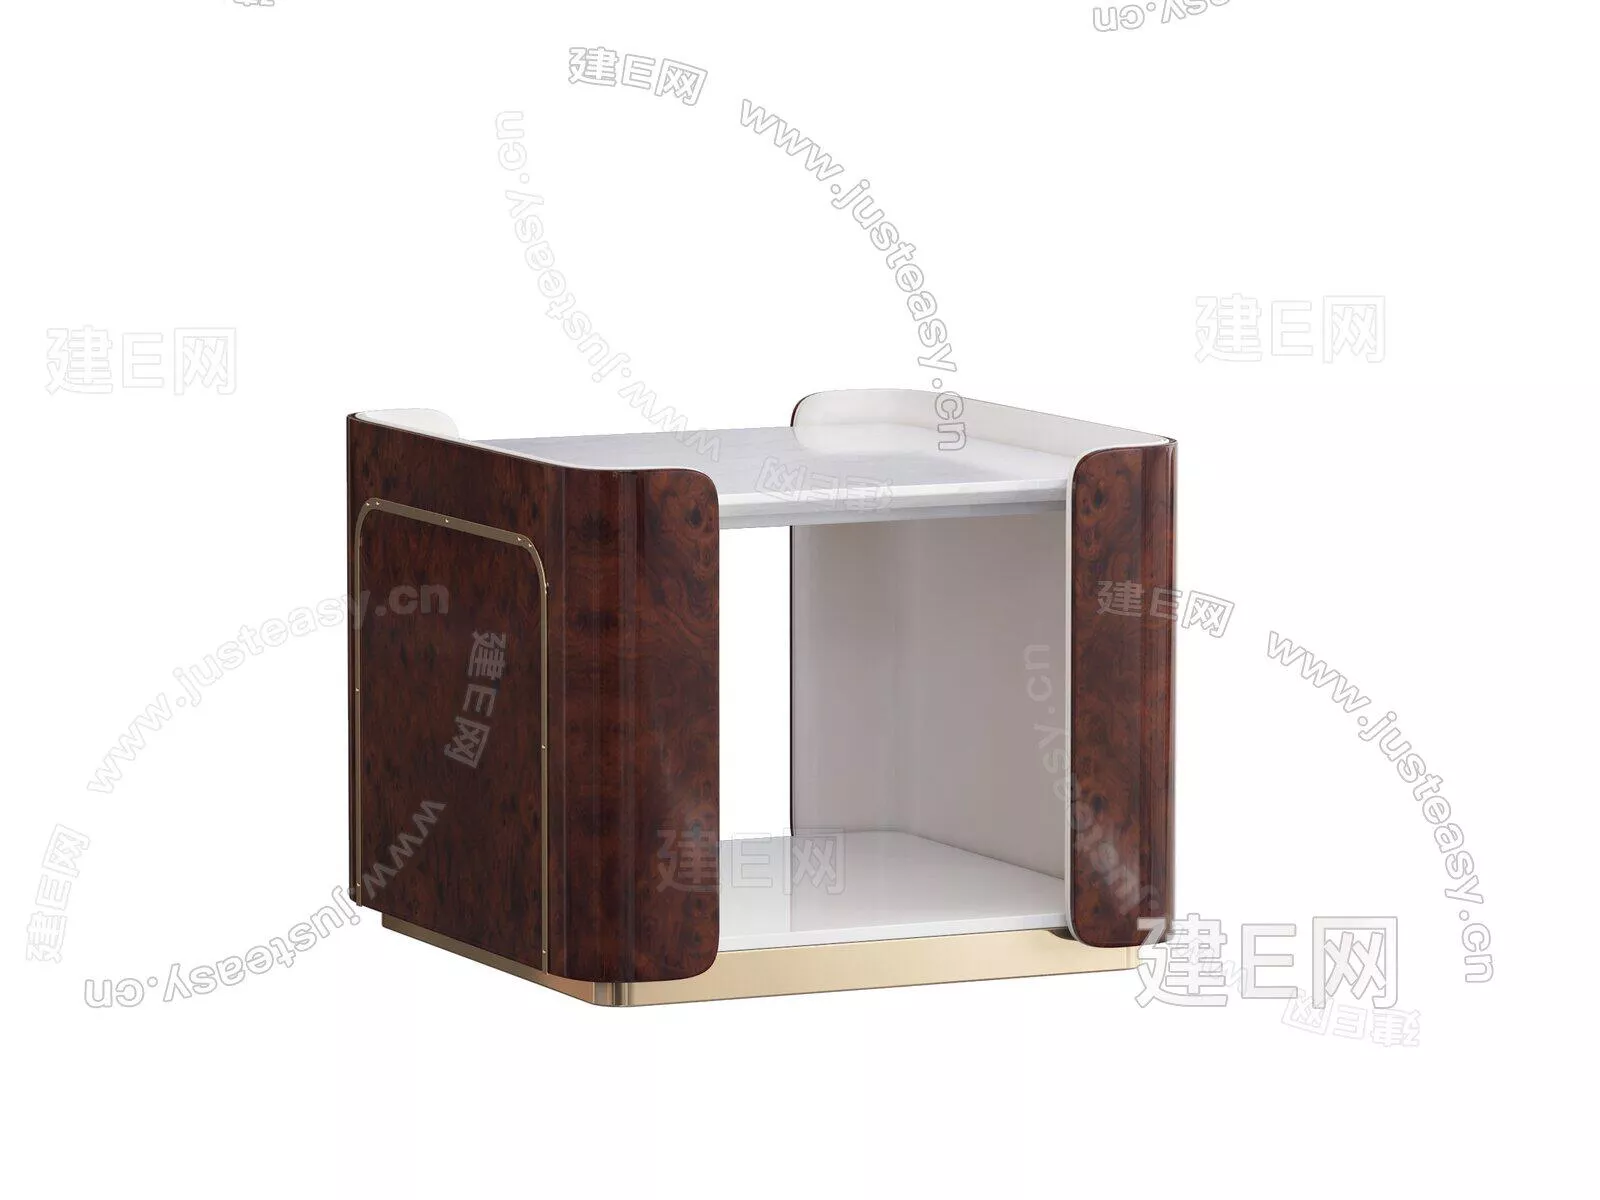 MODERN SIDE TABLE - SKETCHUP 3D MODEL - ENSCAPE - 104941676